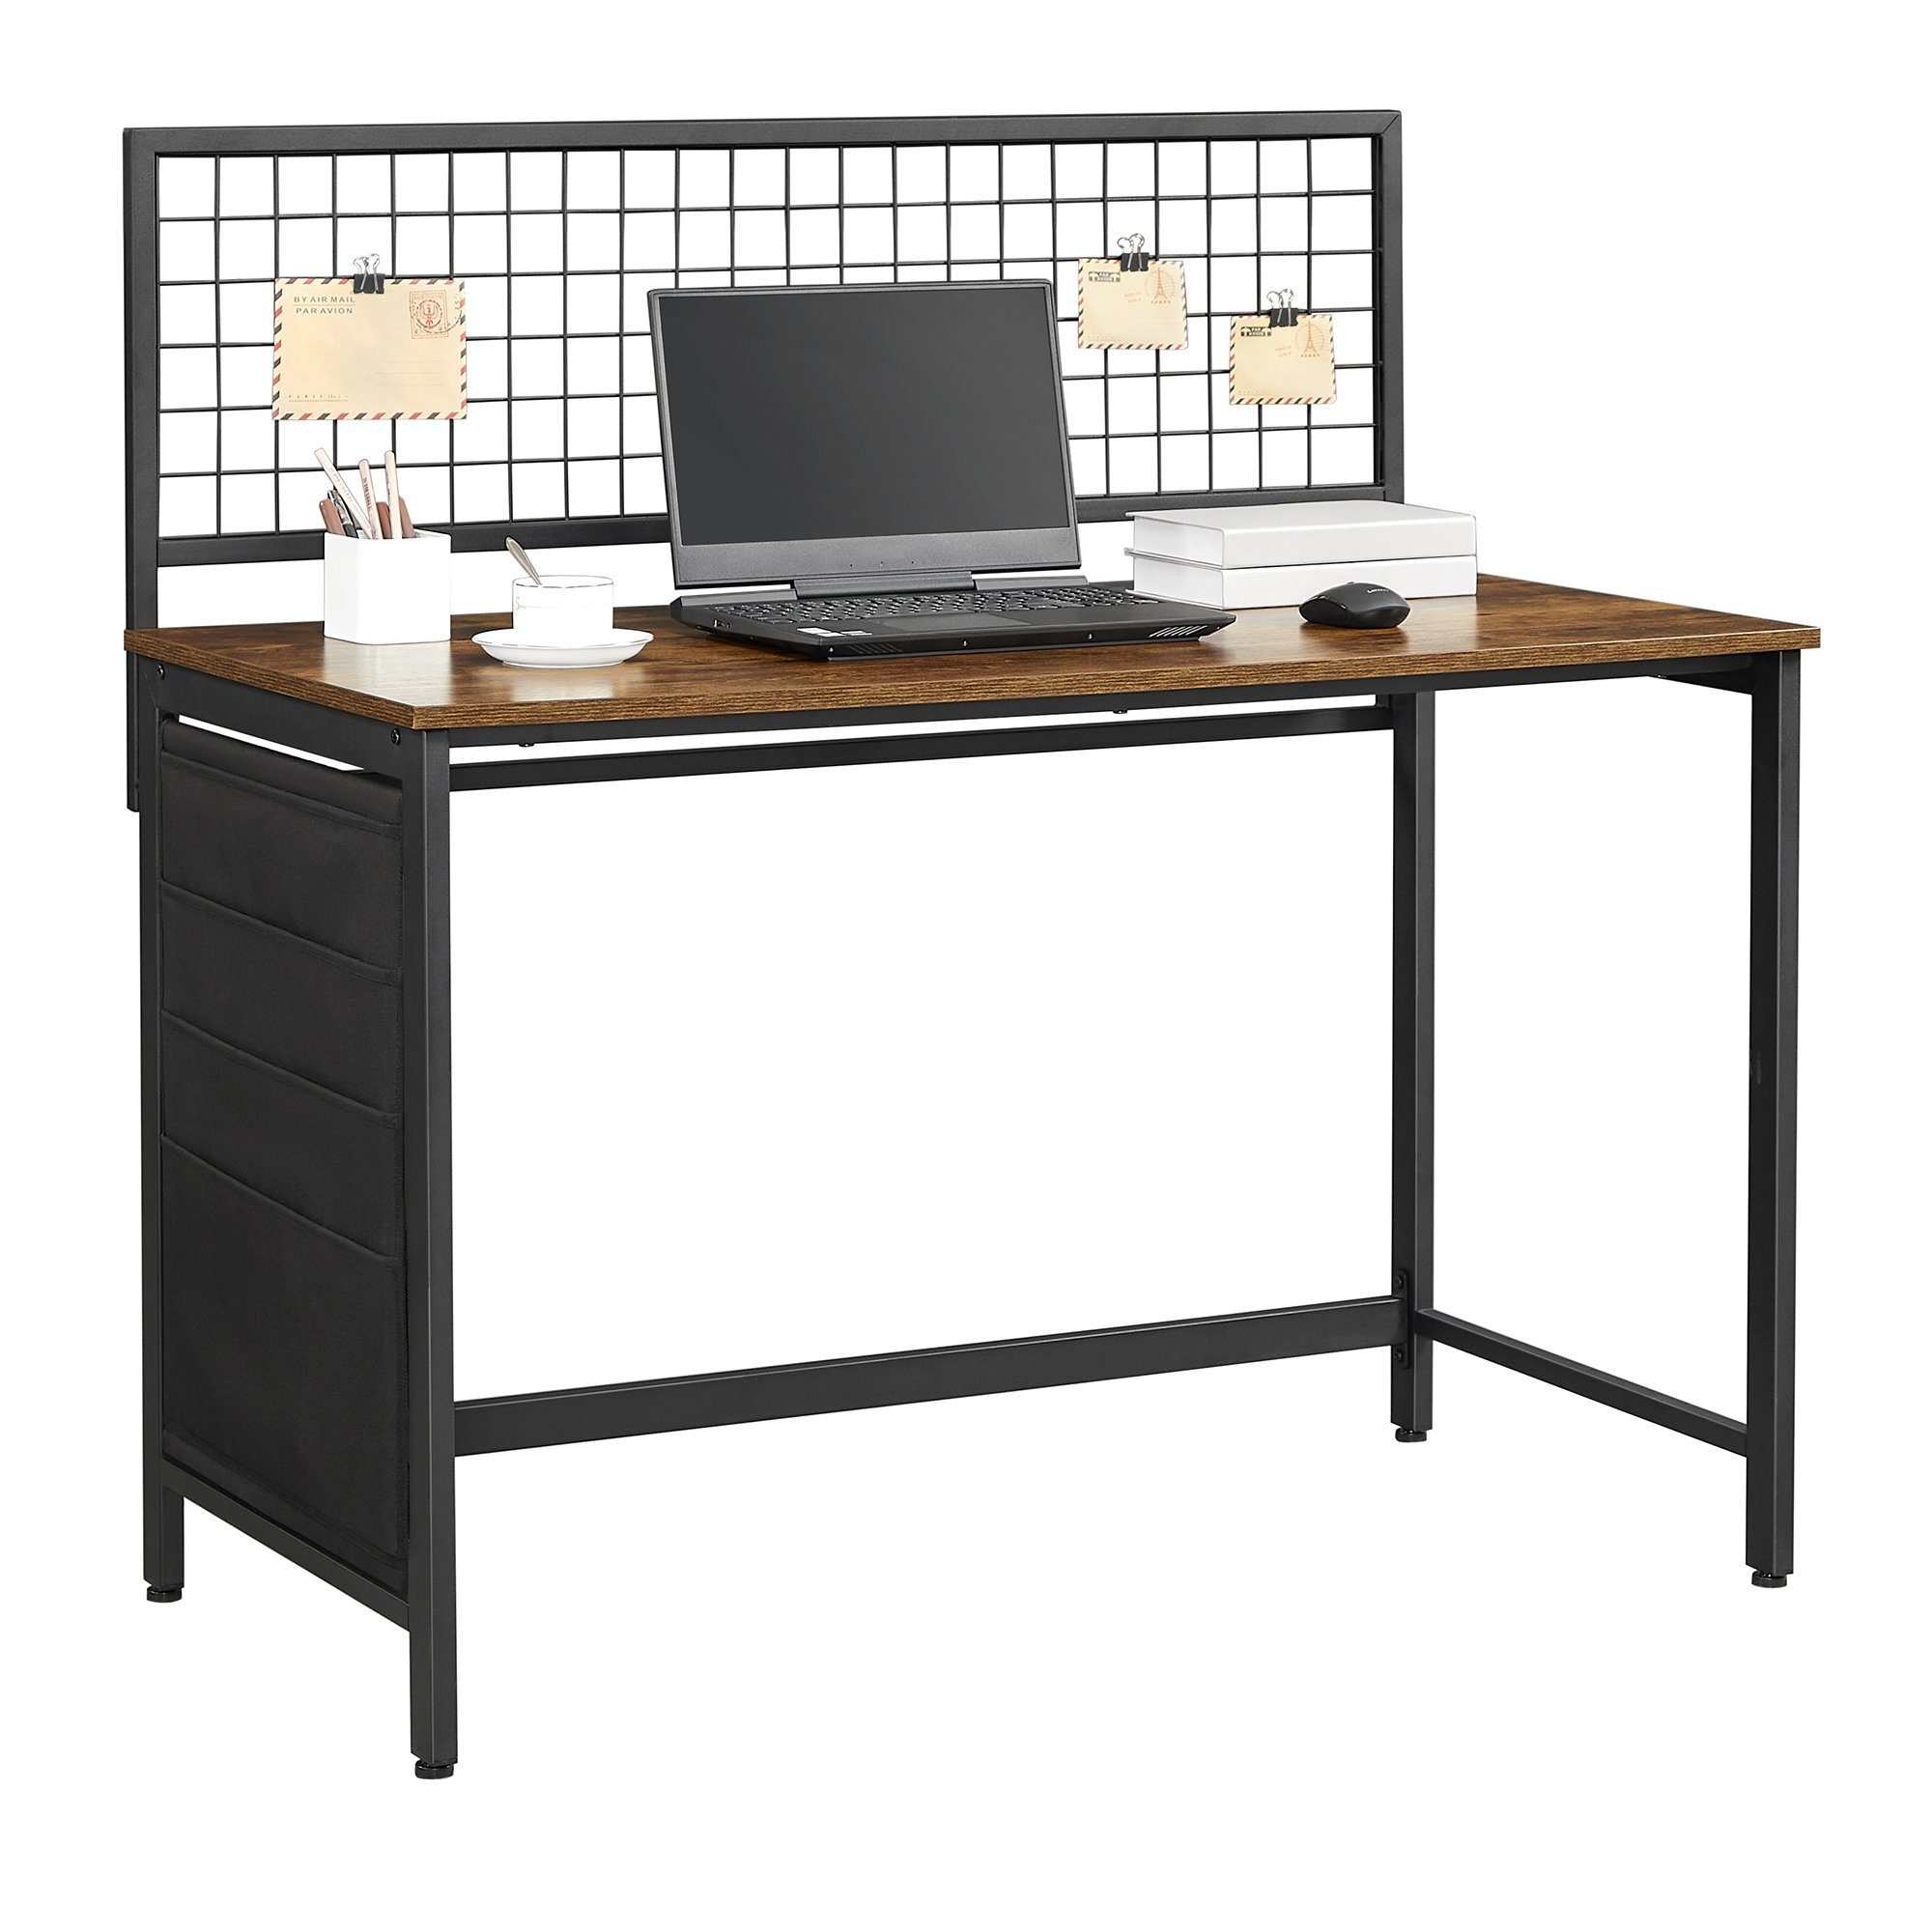 Számítógépes asztal, íróasztal + hálós fal, szövetbol készült táskák